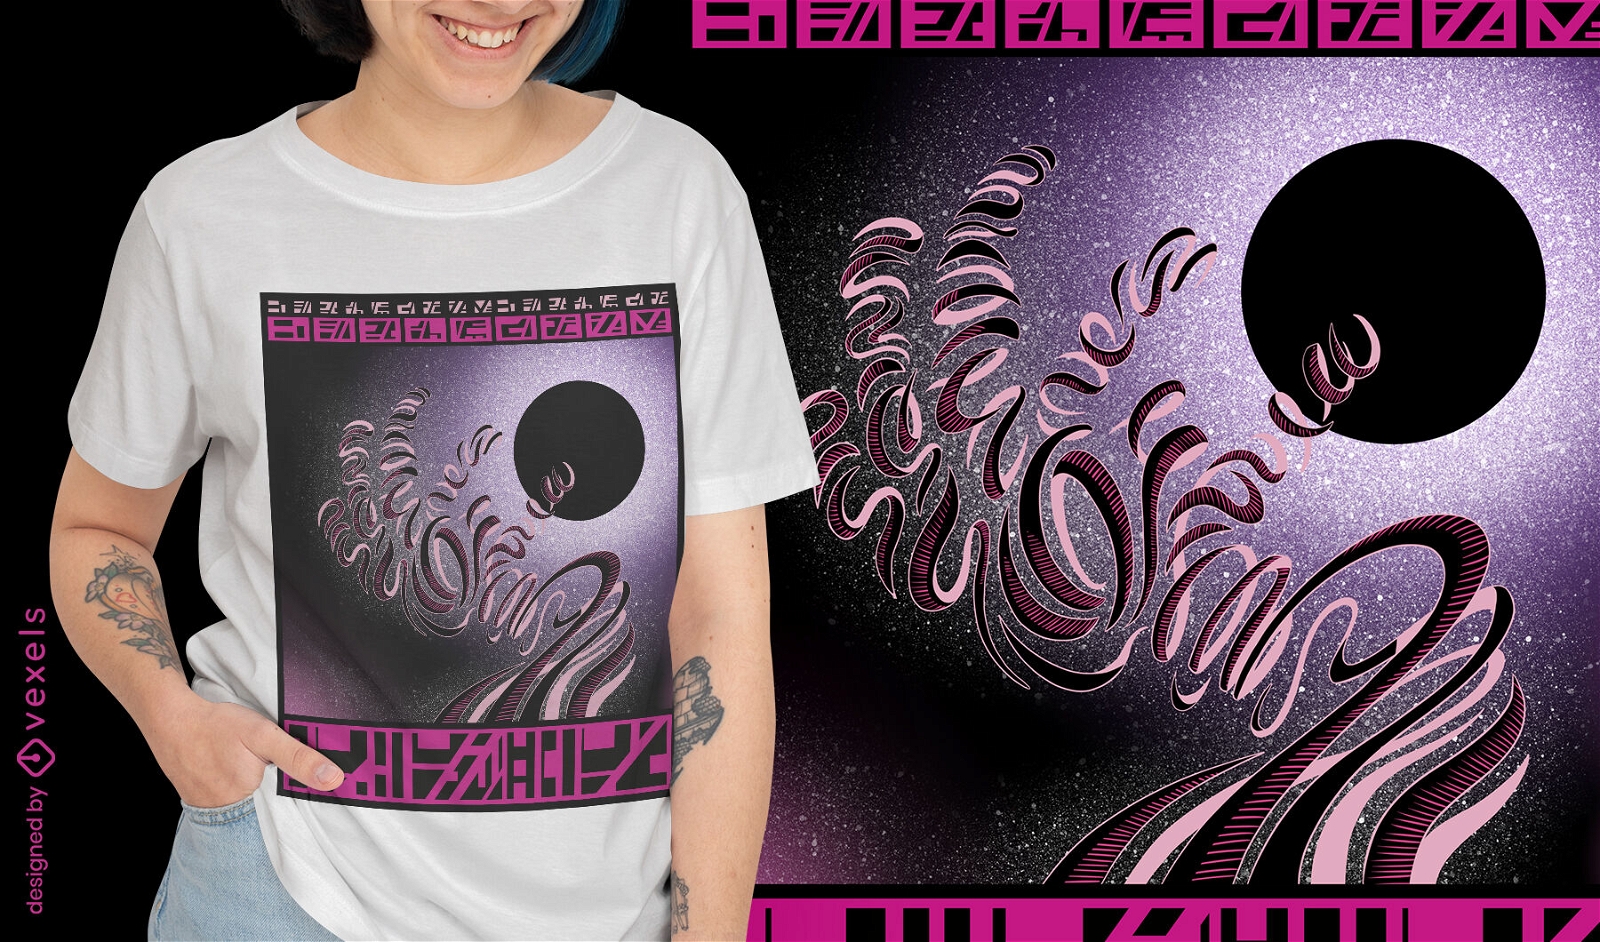 Übernatürliche kosmische Hand im Weltraum-T-Shirt-Design